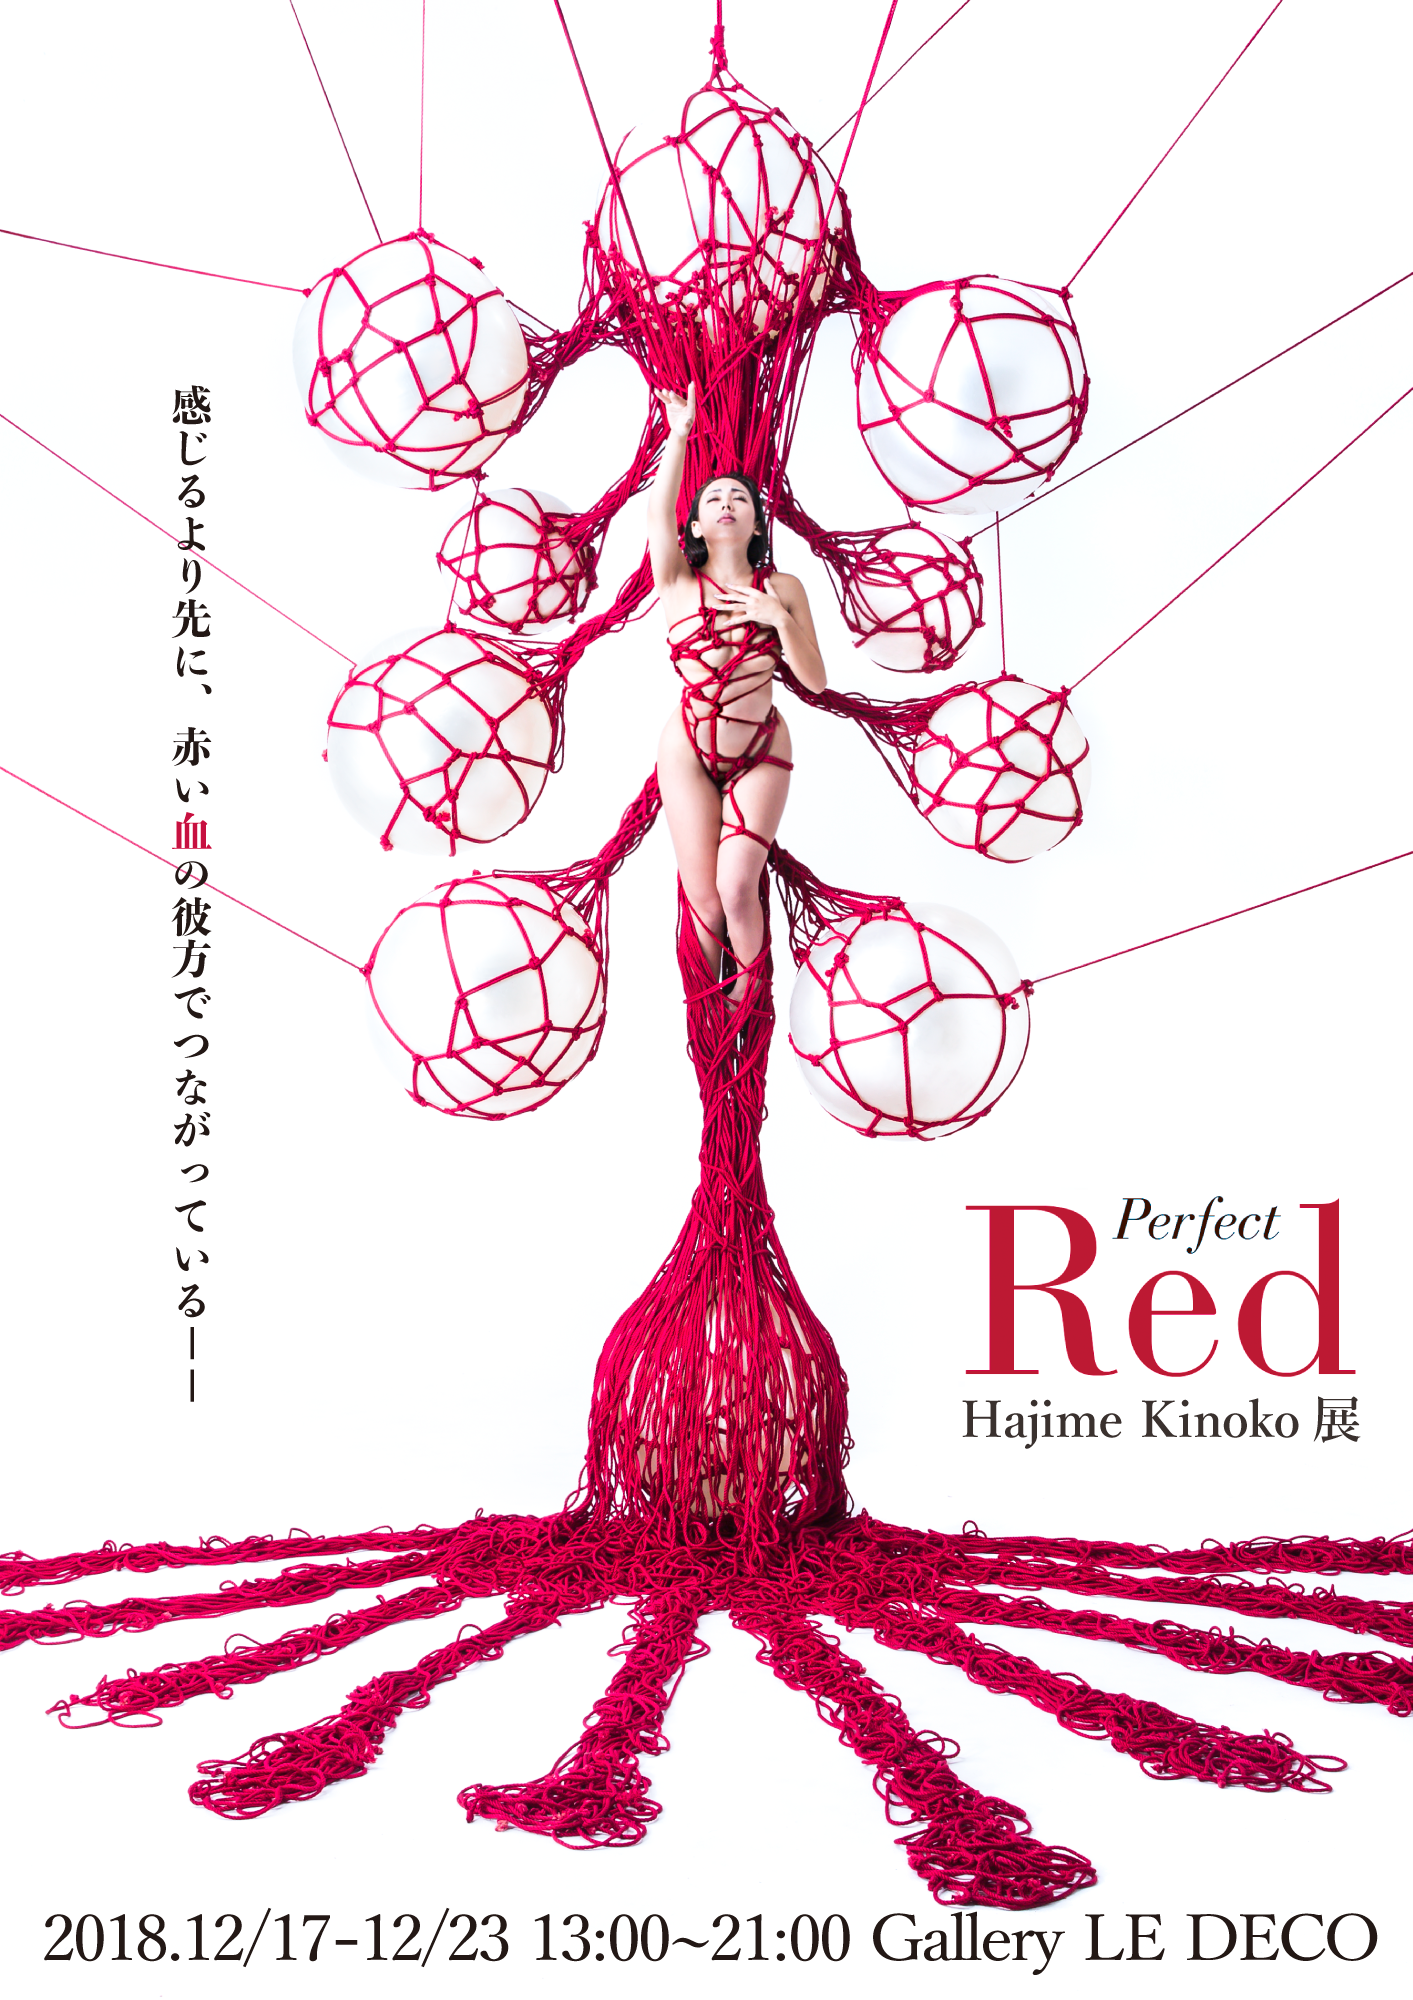 「Perfect Red」Hajime Kinoko 写真展